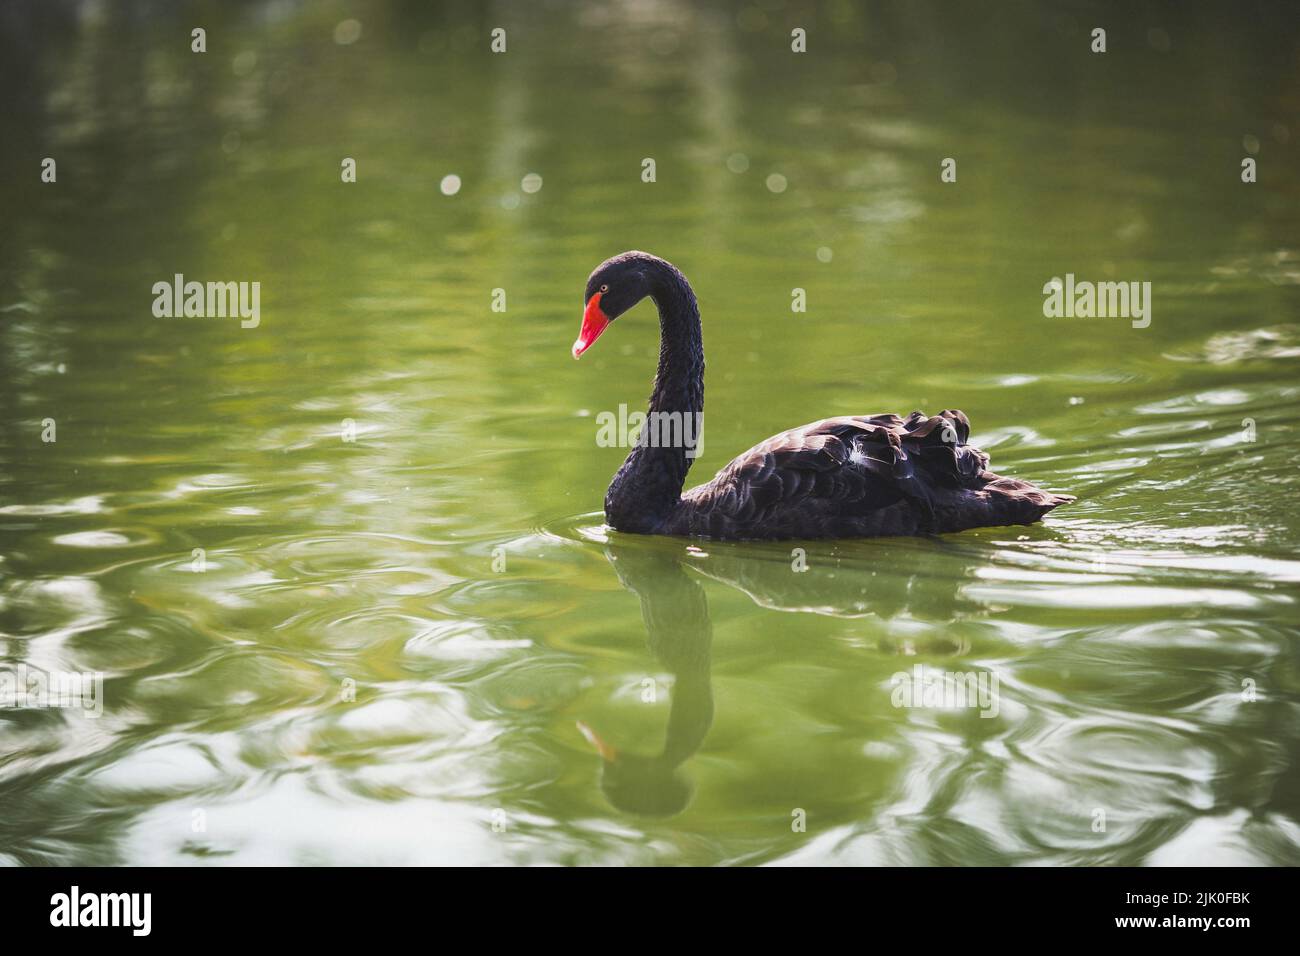 Il bel cigno nero nuota nel lago. Foto Stock